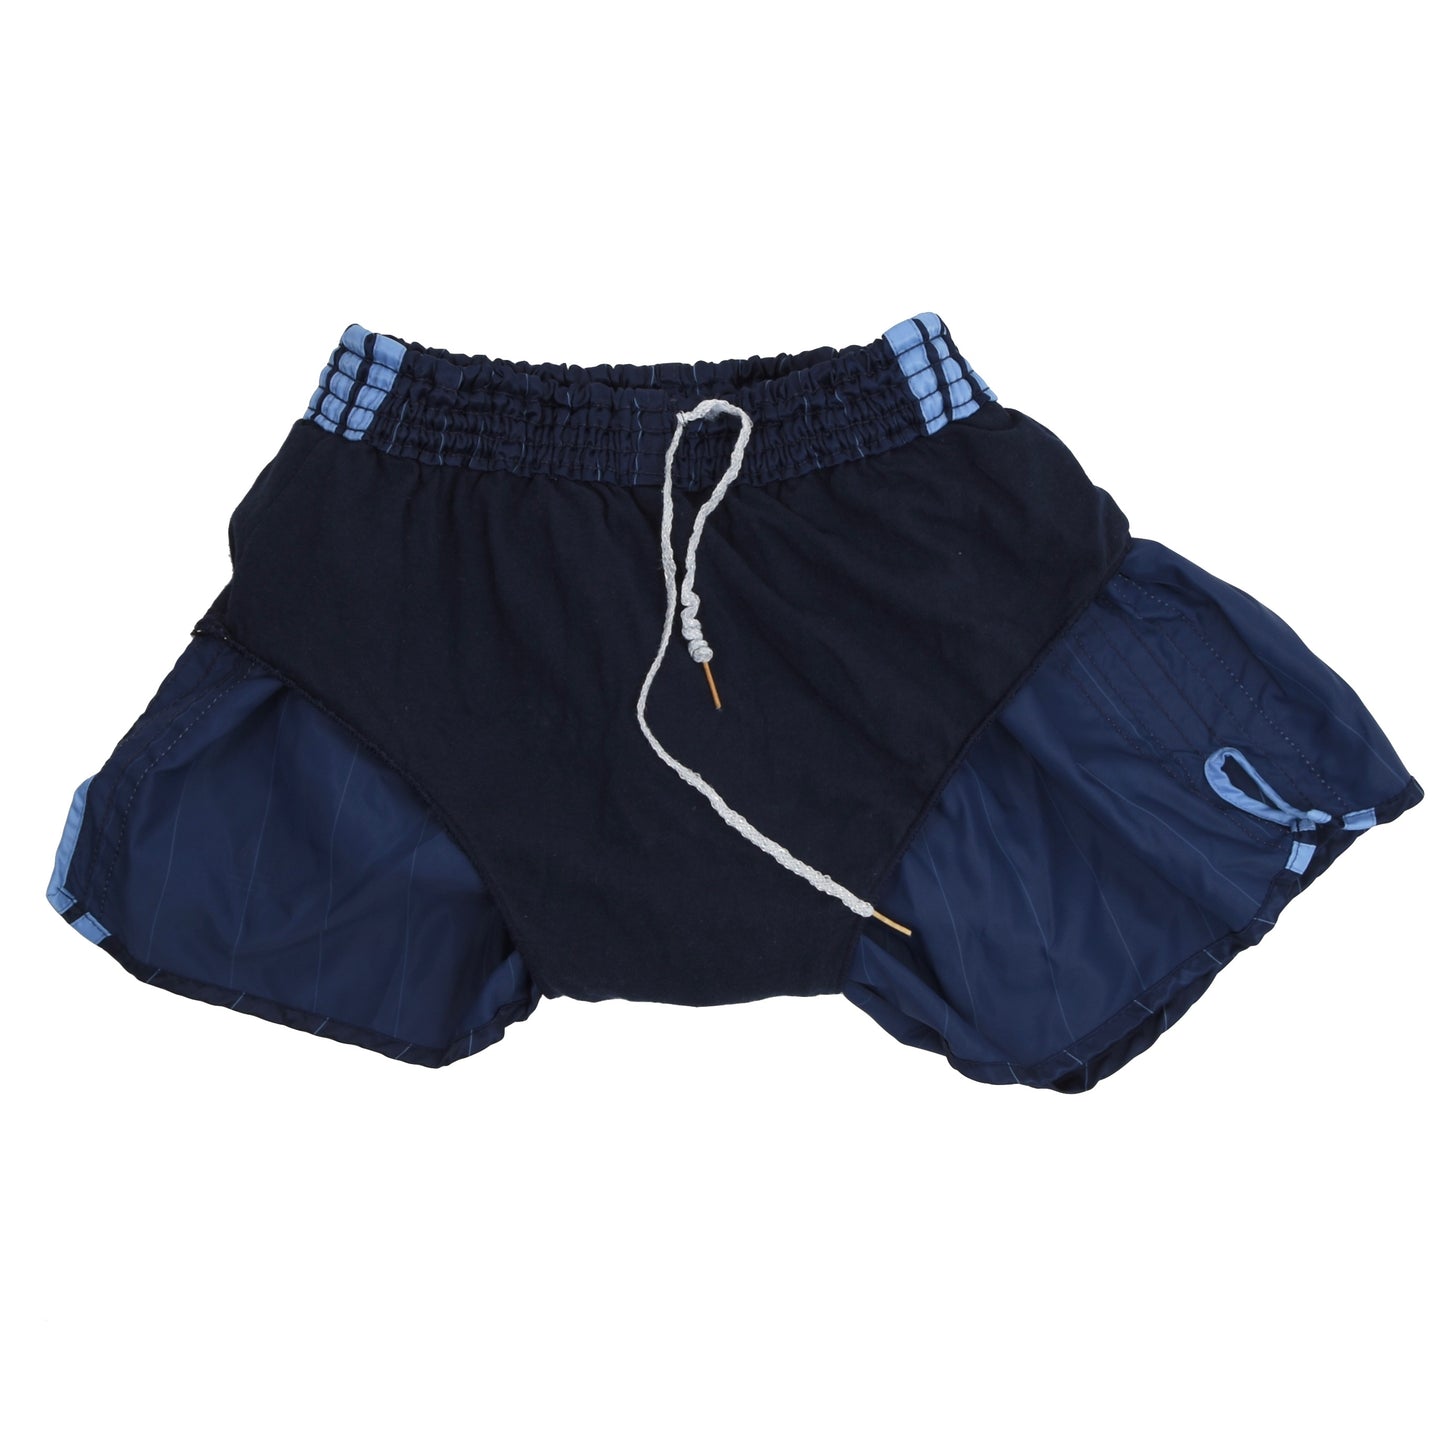 Vintage Adidas Sprinter Shorts Größe 6 - Navy